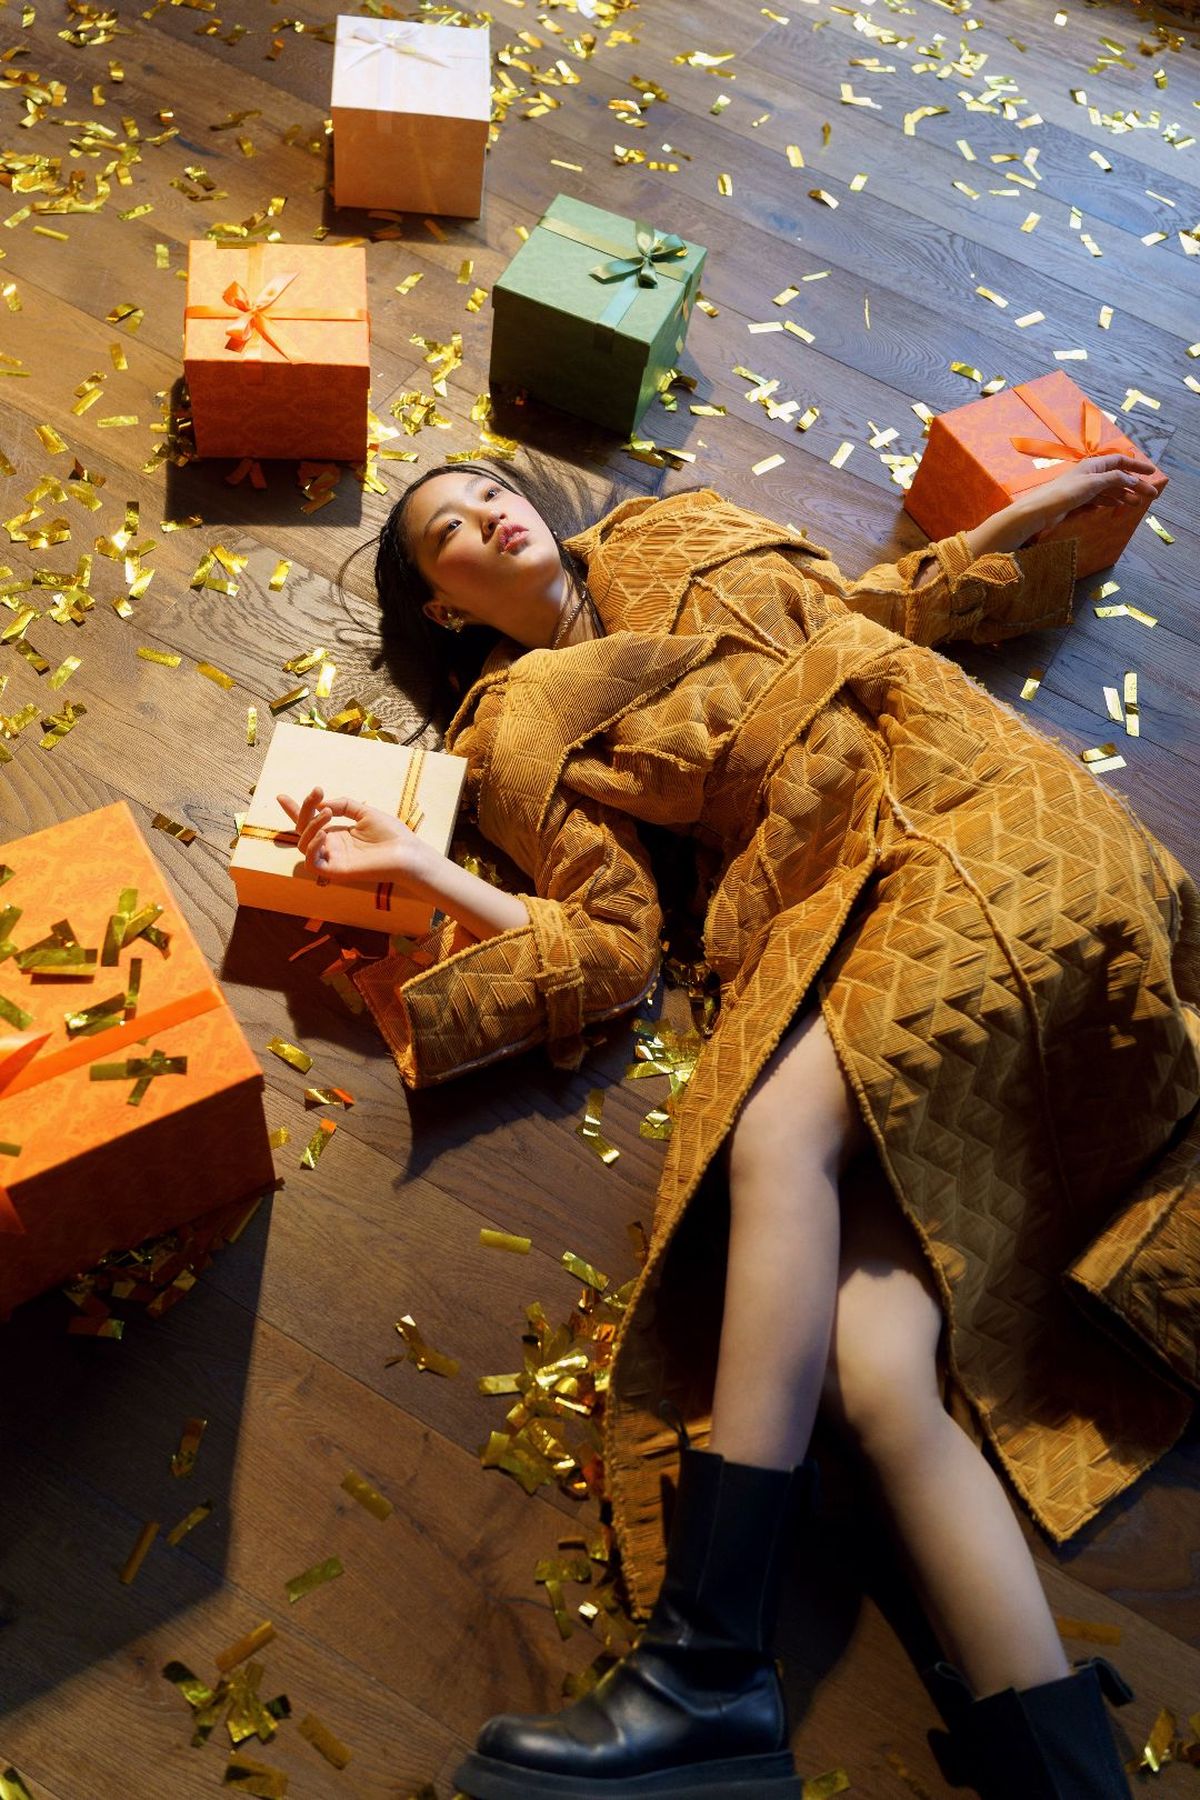 一个穿着连衣裙的年轻女子躺在地上 周围堆满了礼物和彩纸屑。